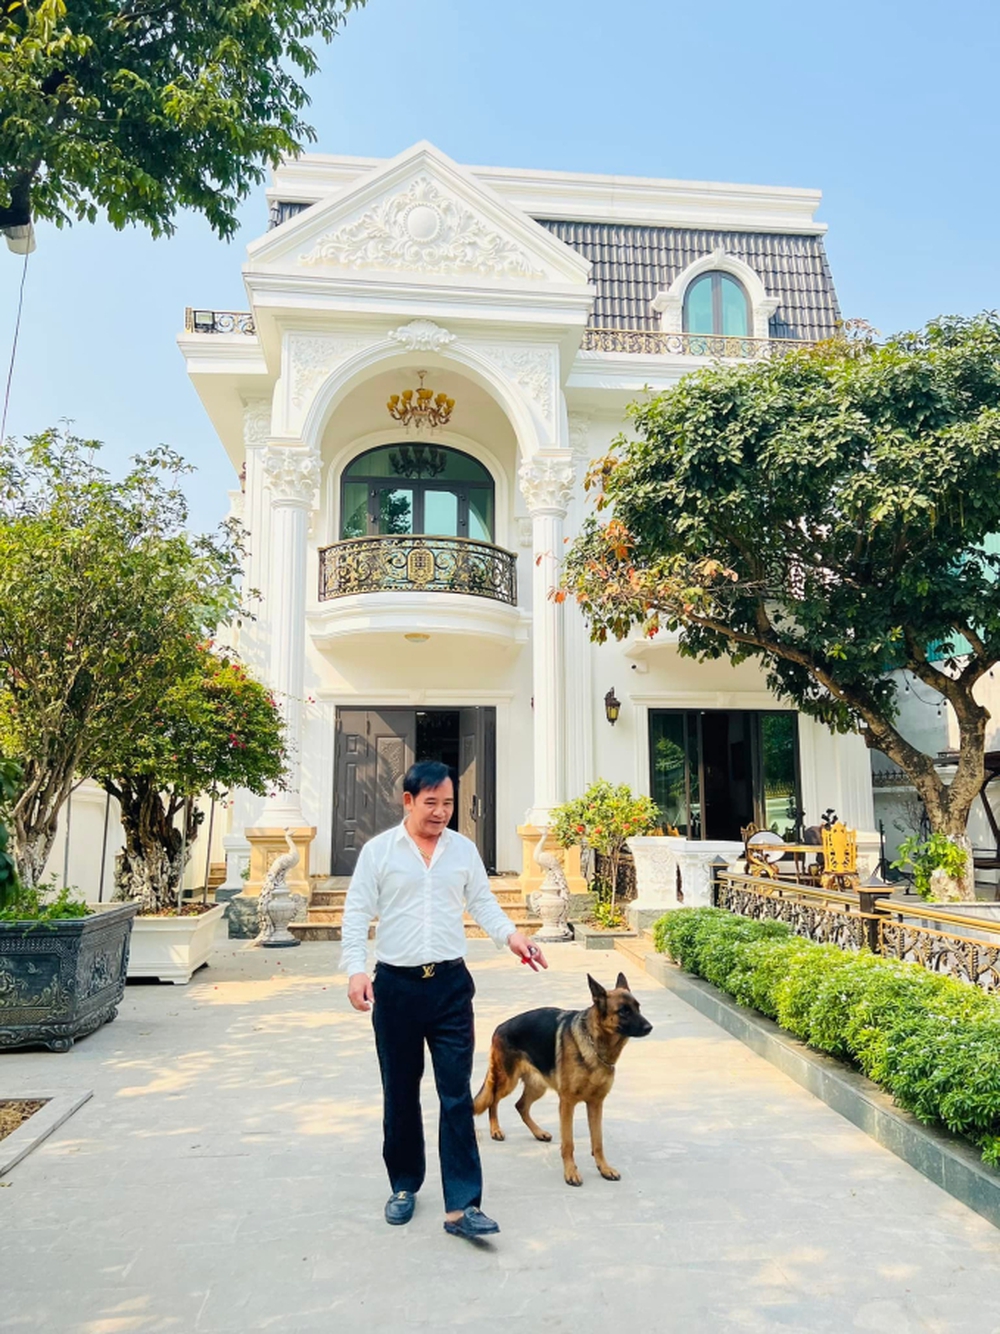 NSƯT Quang Tèo ở tuổi 61: Xây biệt thự bề thế, rộng 1000m2, nhưng ít khi ở nhà với vợ con vì mê chạy show - Ảnh 6.